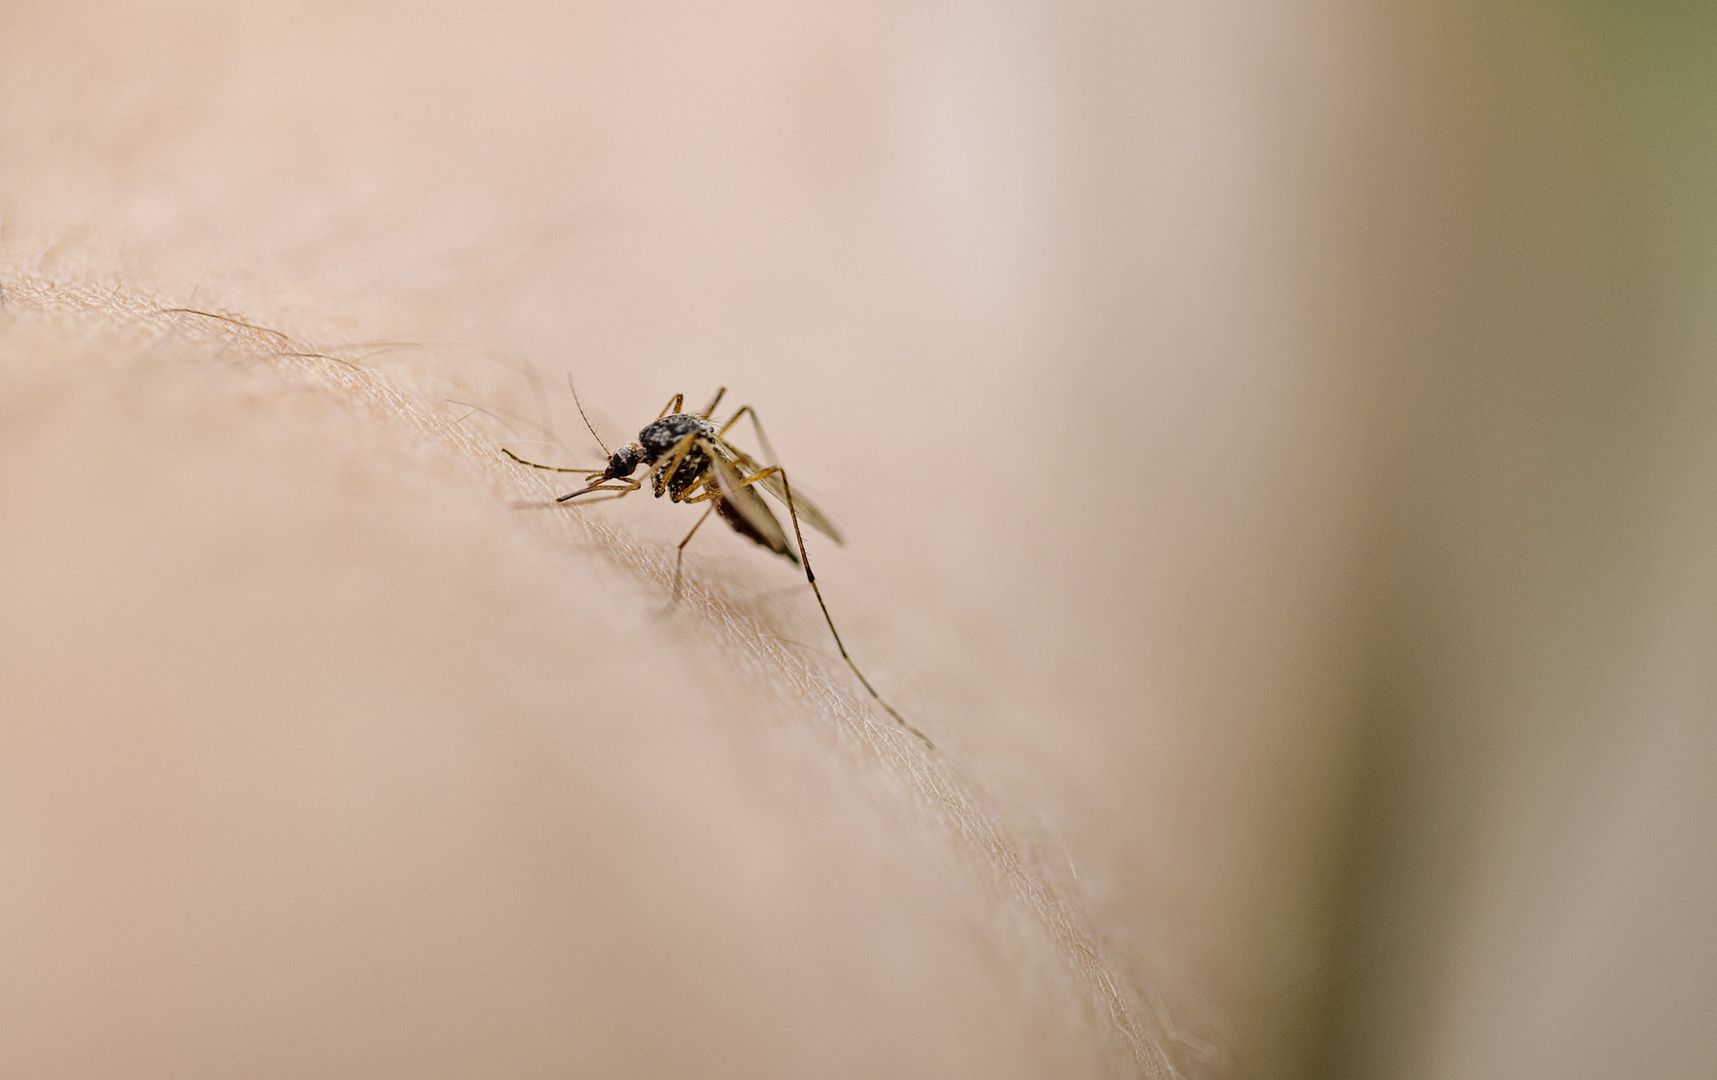 Plaga komarów w Polsce? Ekspert wyjaśnia. "Będziemy mieli problemy"